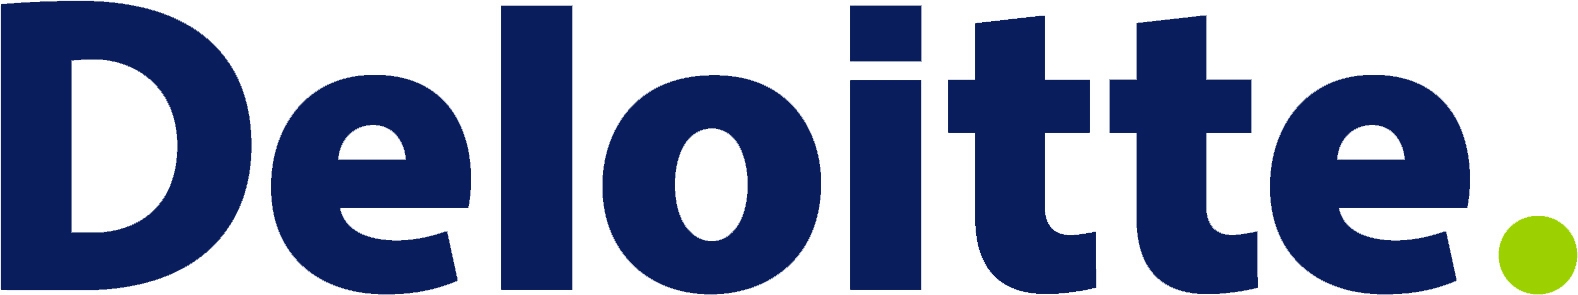 Deloitte LLP logo